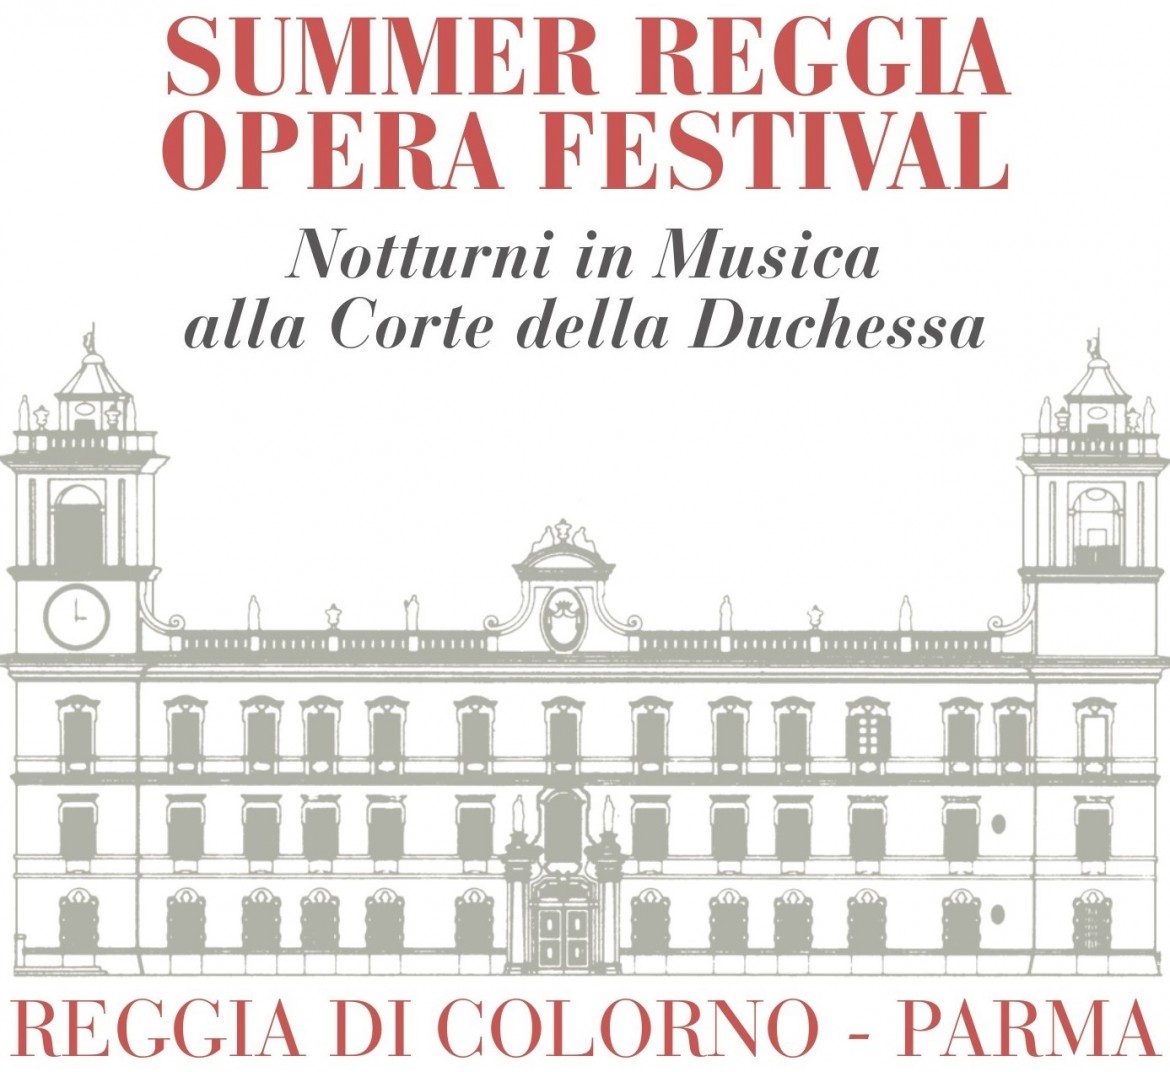  immagine dell'evento: Nello splendore del giardino storico della Reggia di Colorno si terrà l’ Undicesima edizione del “Summer Reggia Opera Festival”.